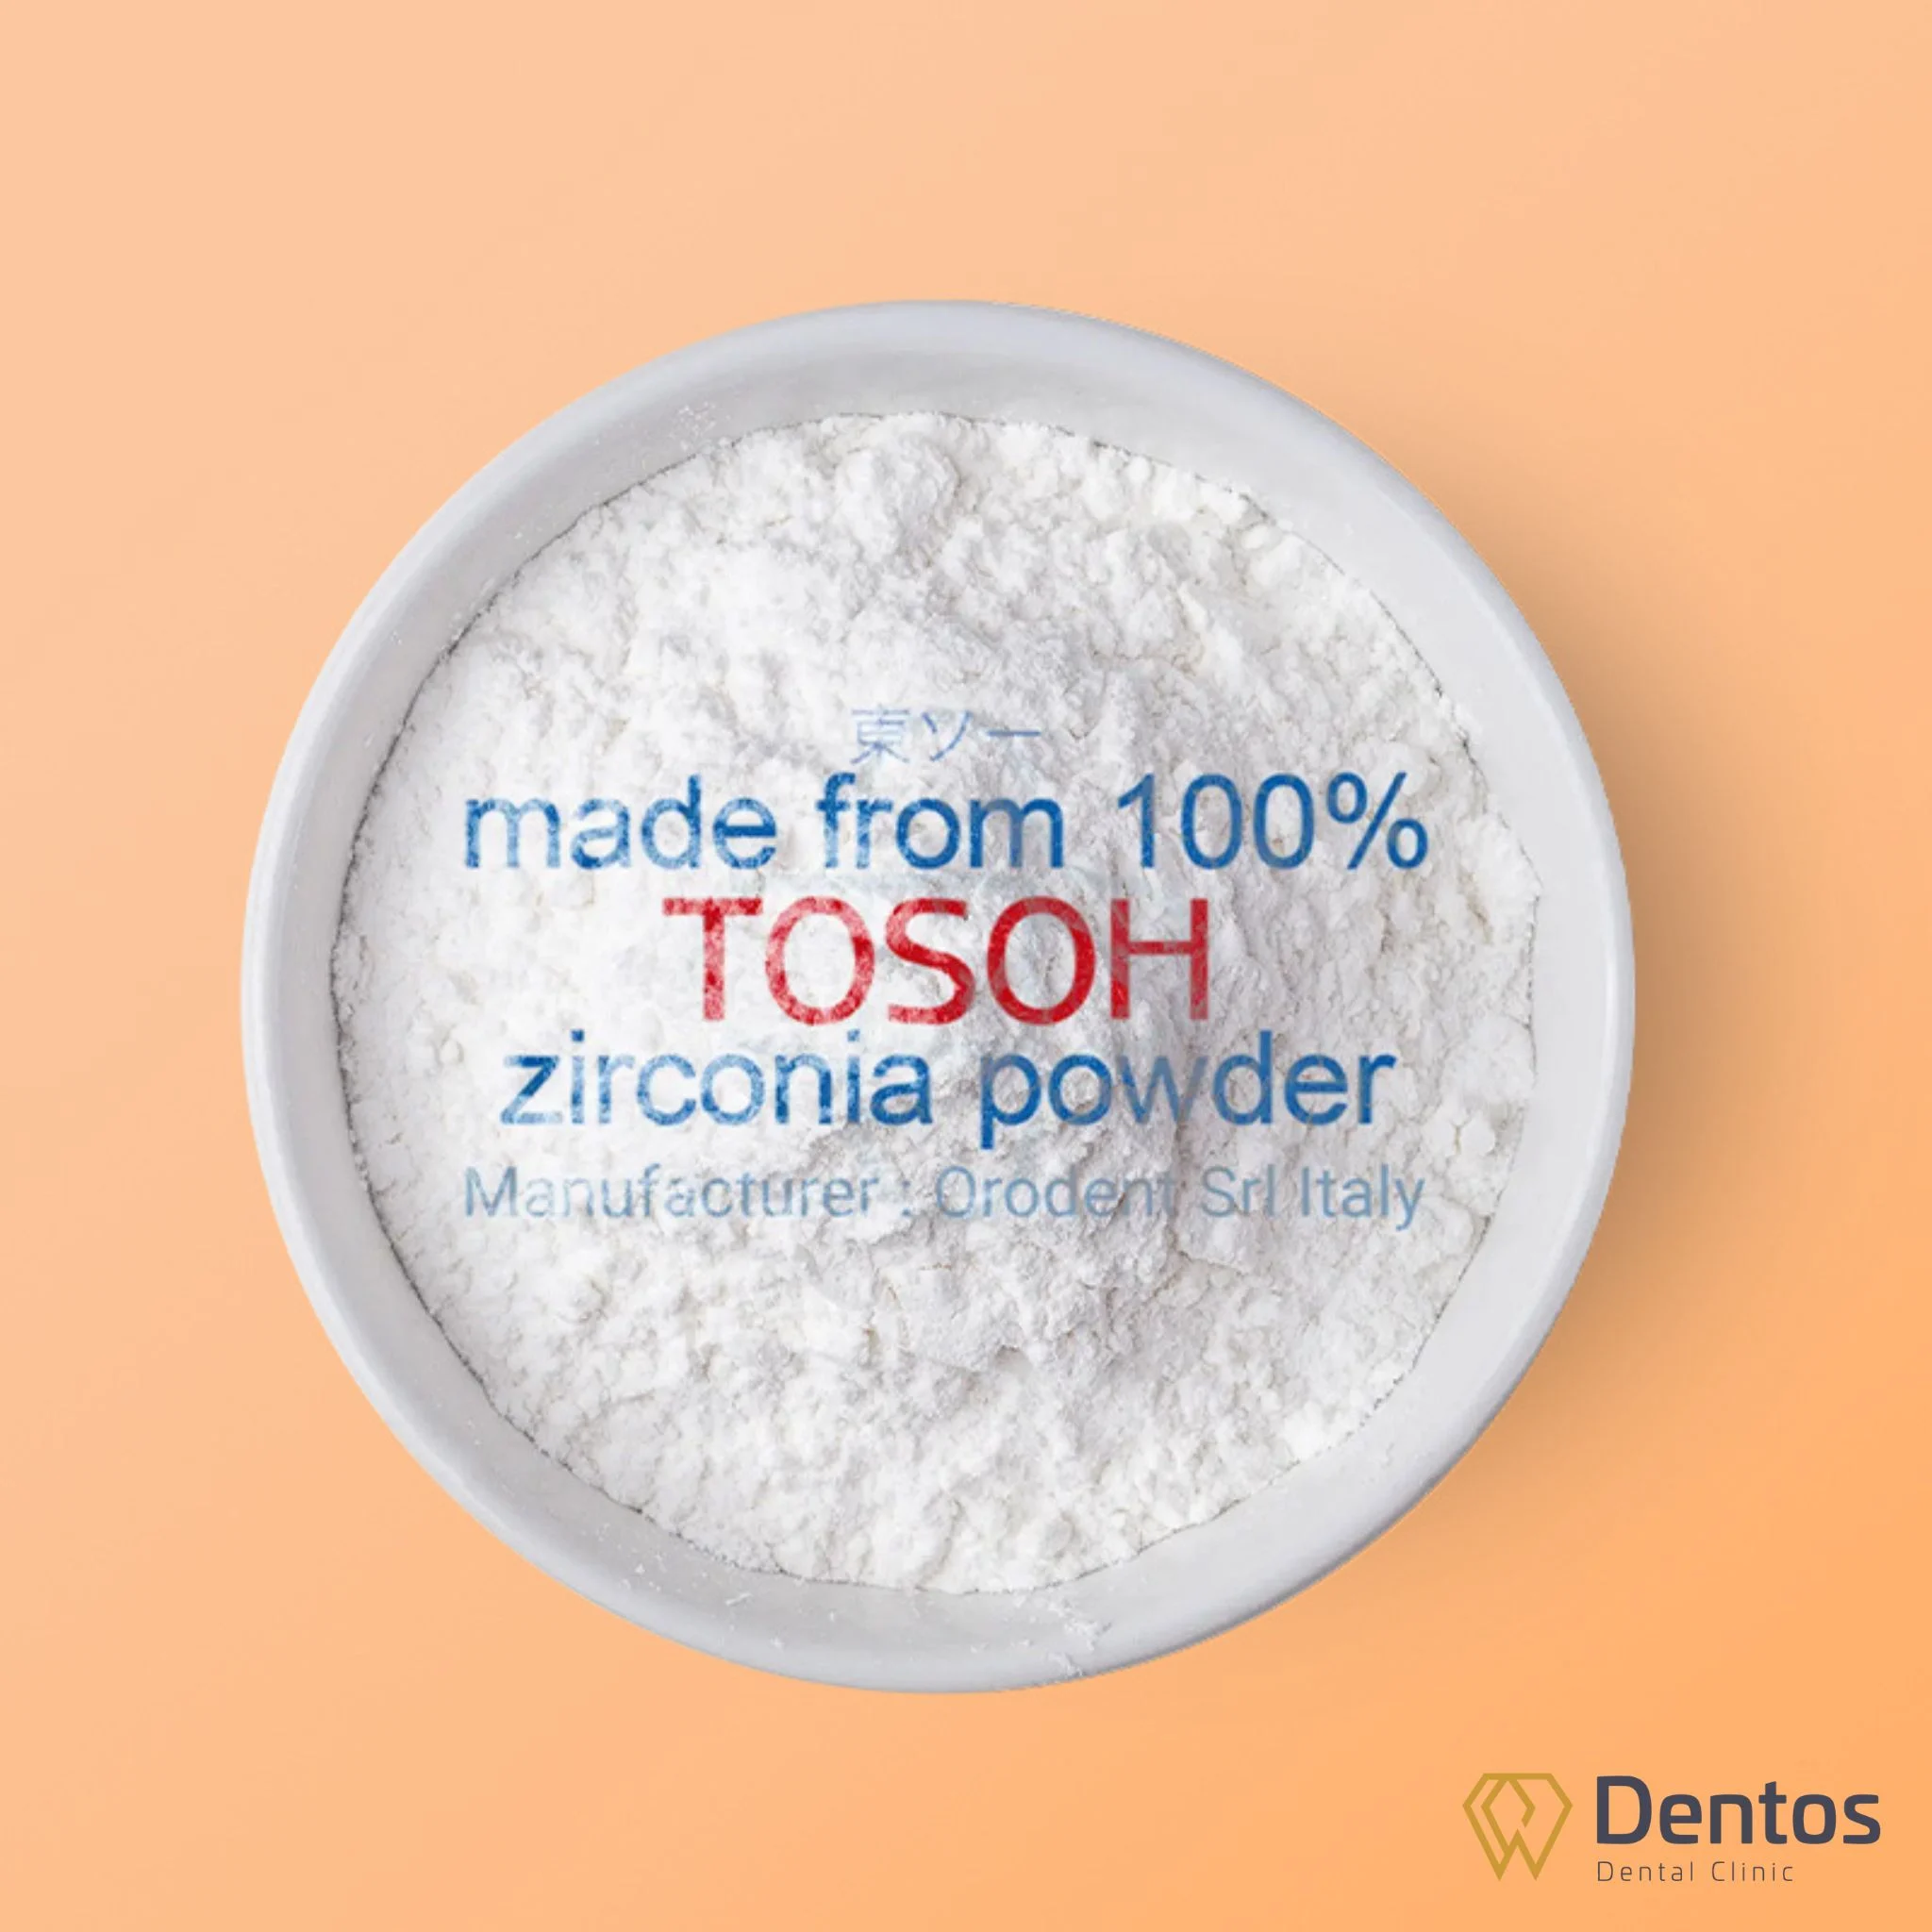 Răng sứ Orodent sử dụng 100% bột sứ Tosoh từ nhà cung cấp Zirconia lớn nhất thế giới tại Nhật Bản